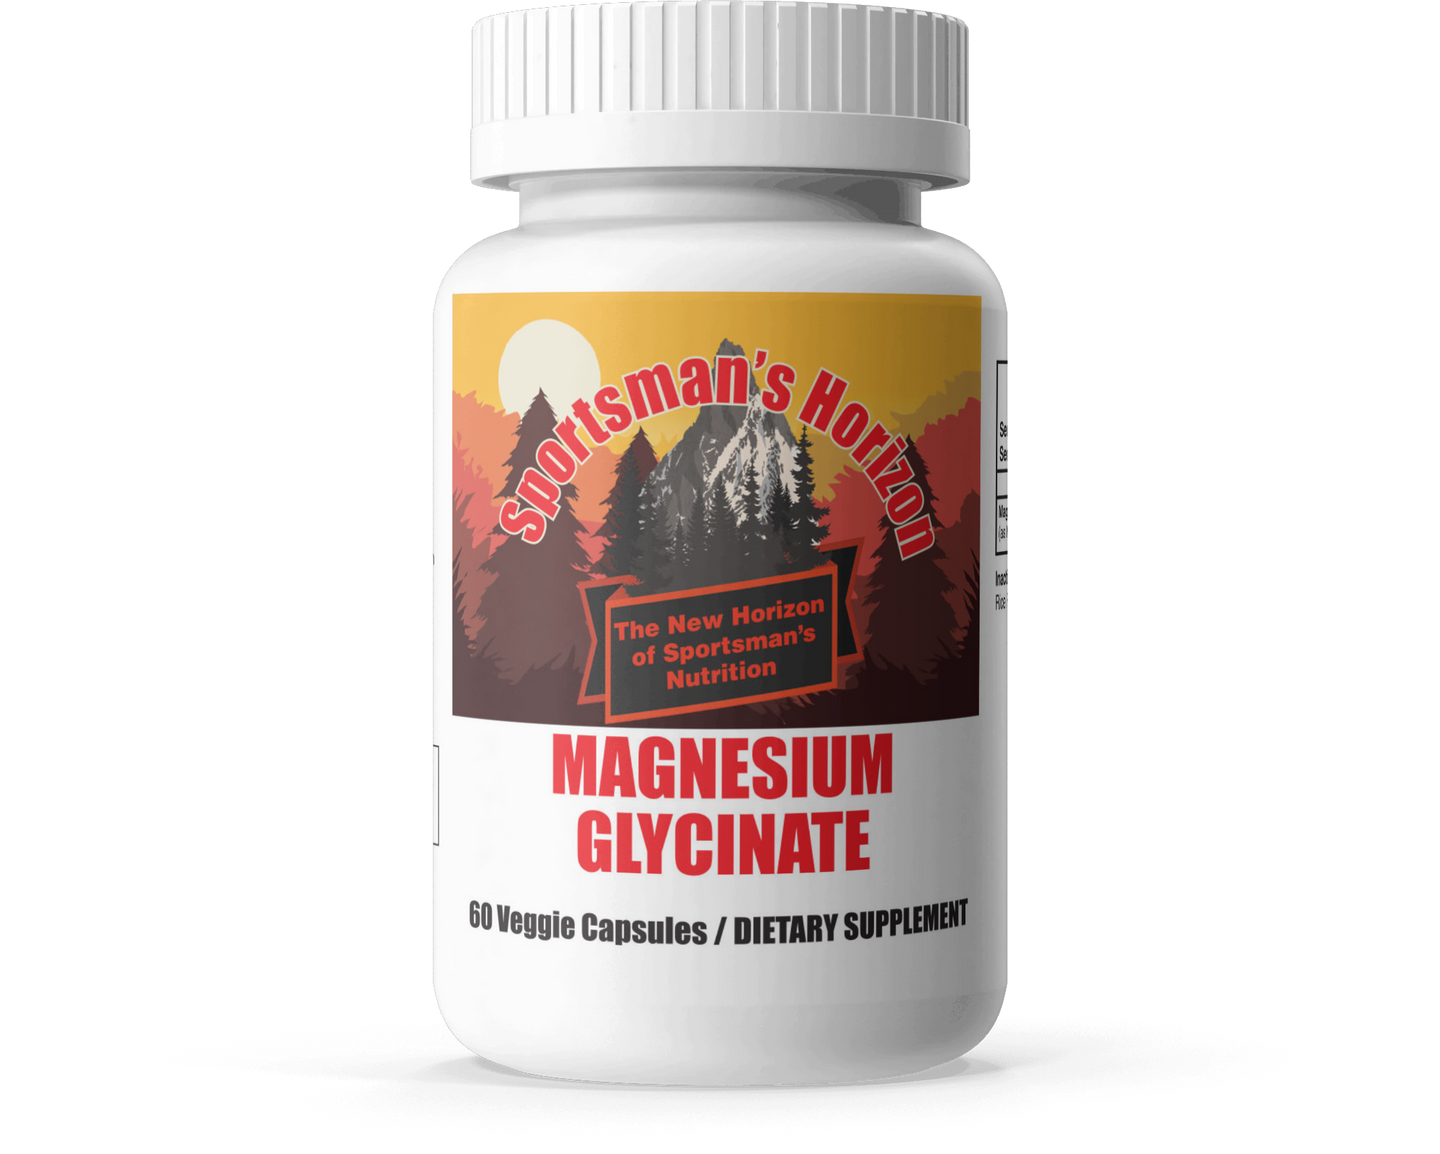 Magnesium - Sleep better, Feel Better